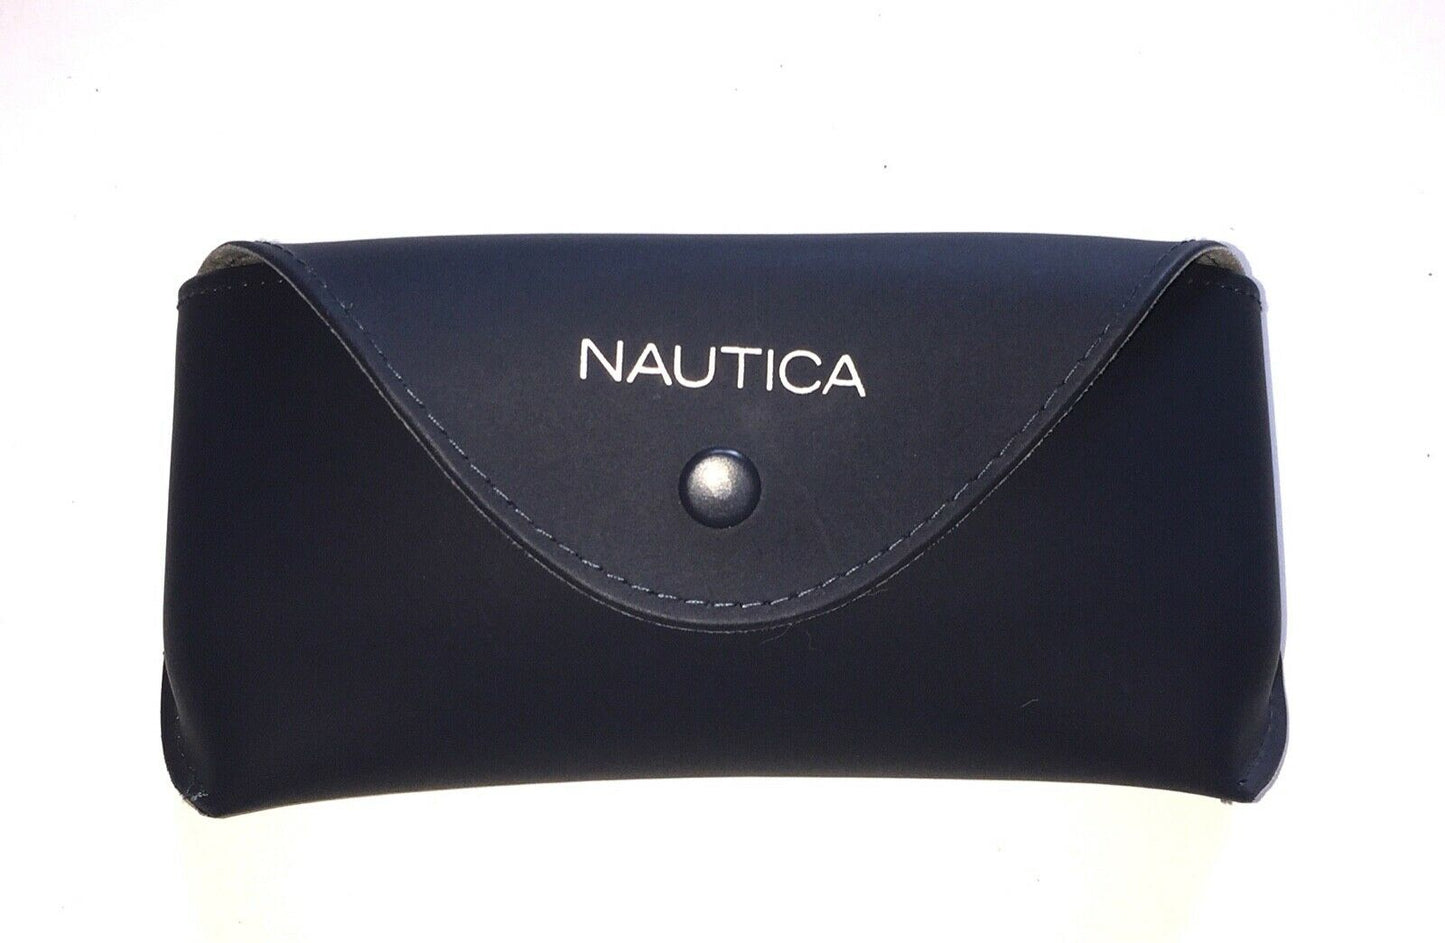 Nautica N7321-300-56 56mm New Eyeglasses